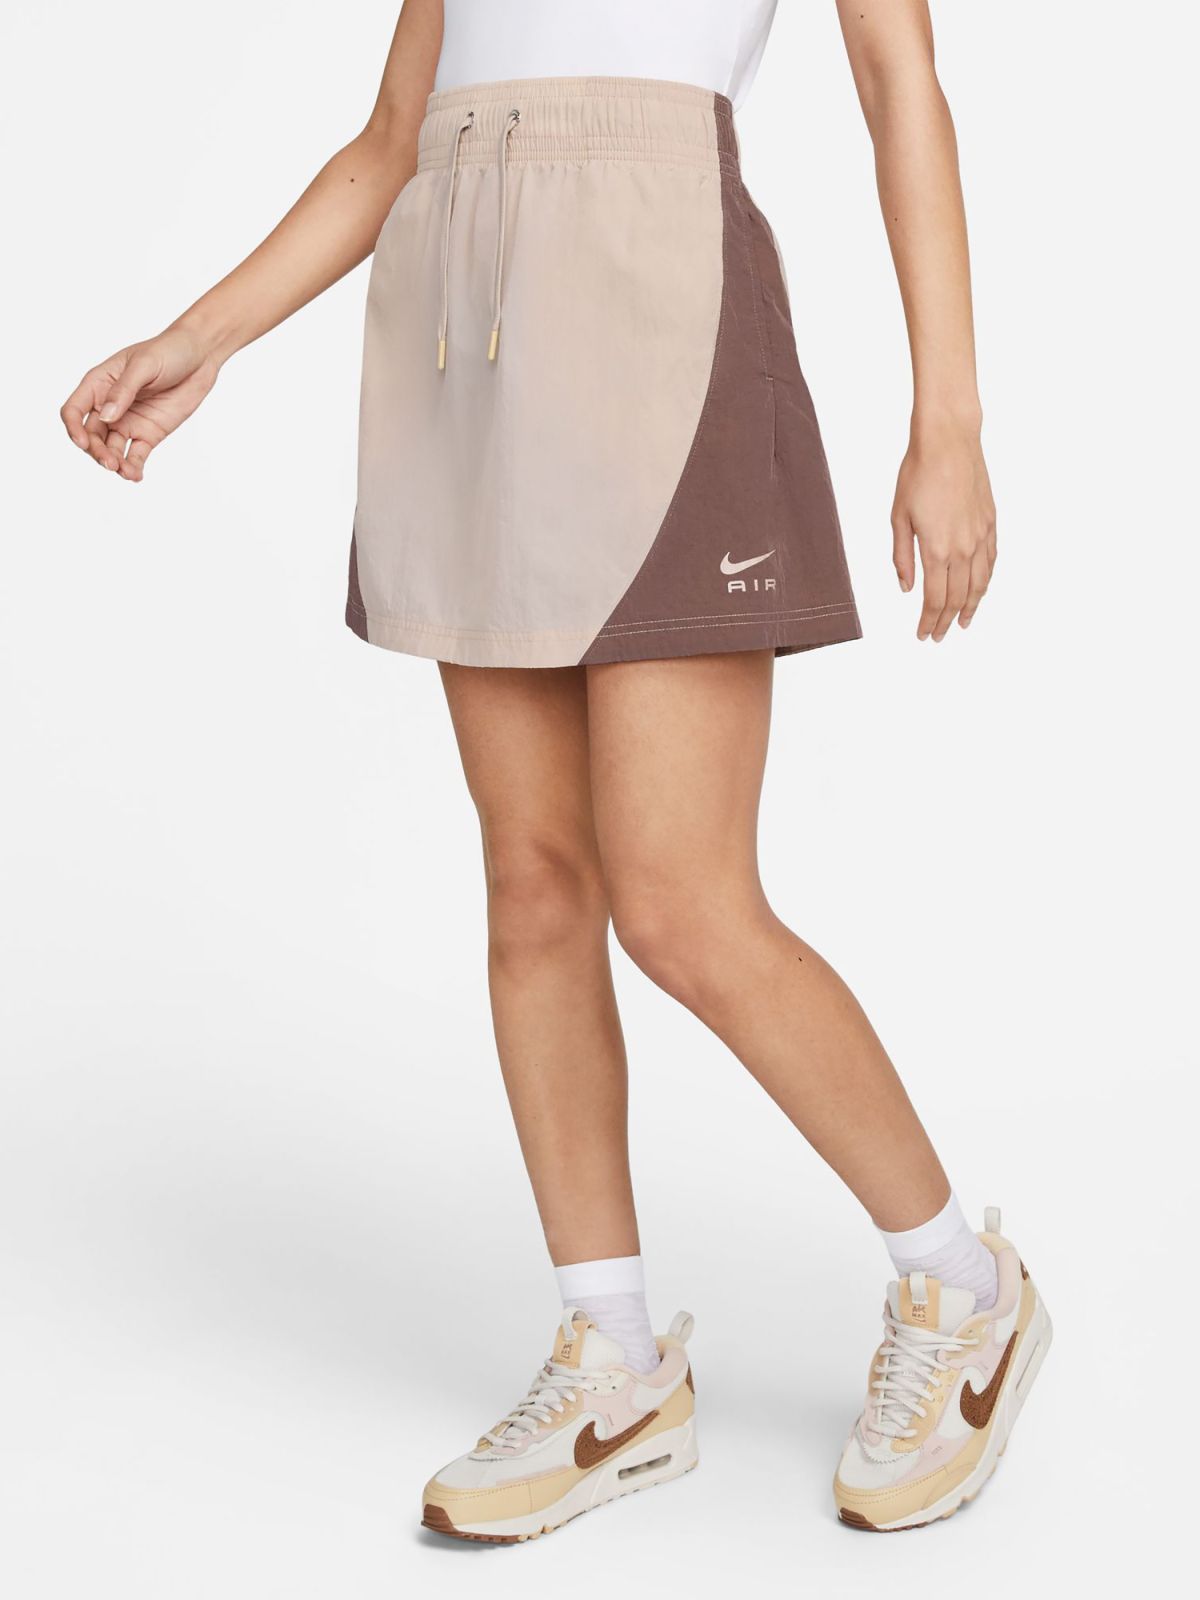  חצאית מיני ניילון עם לוגו של NIKE